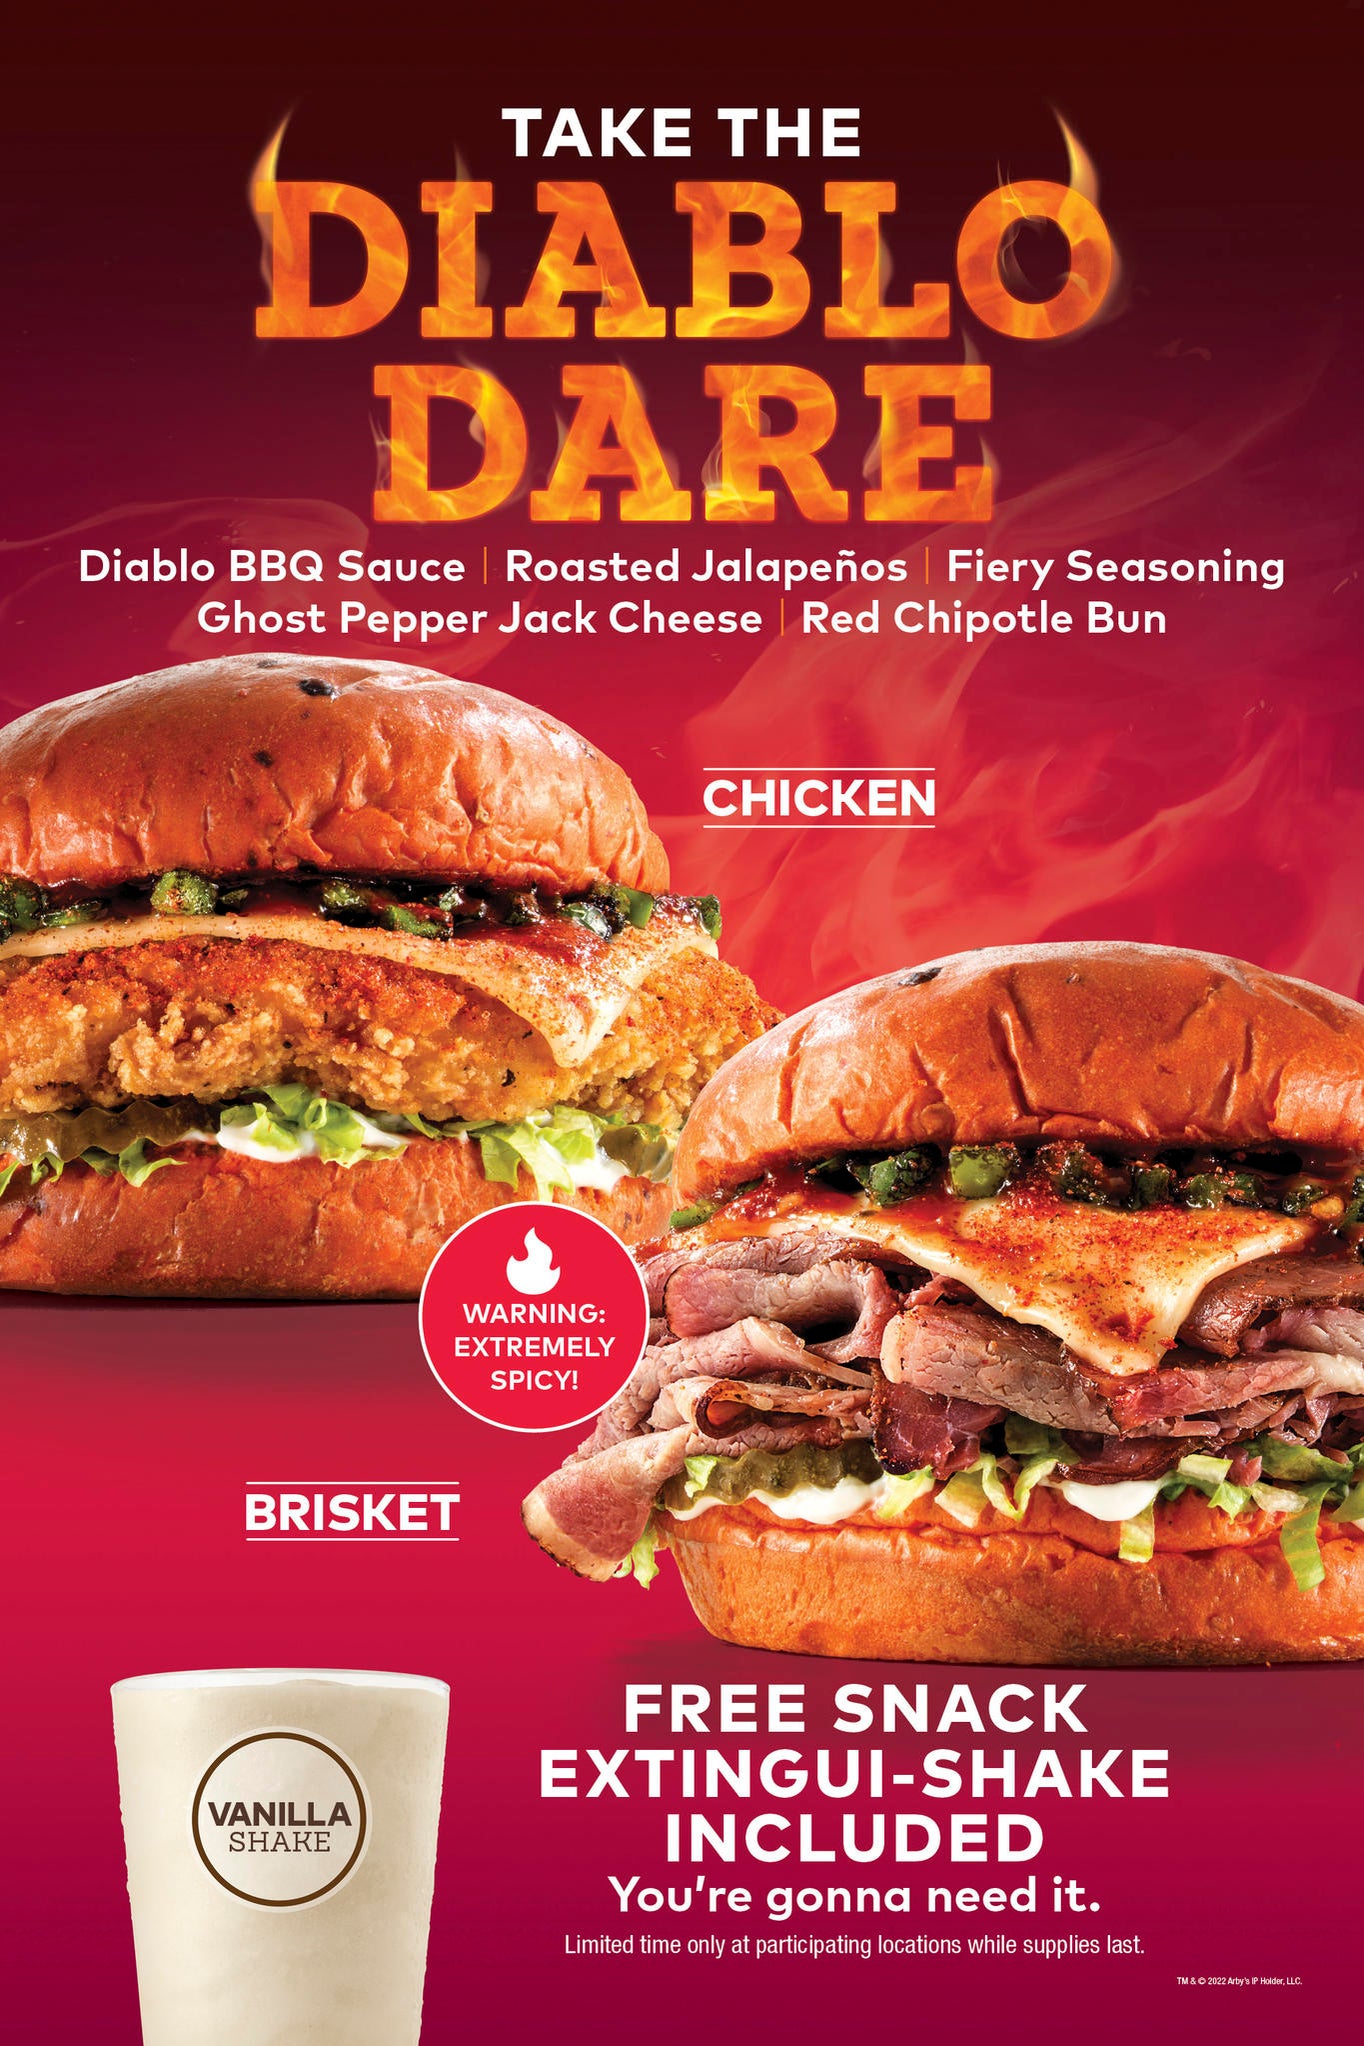 arbys-diablo-dare-sandwich.jpg